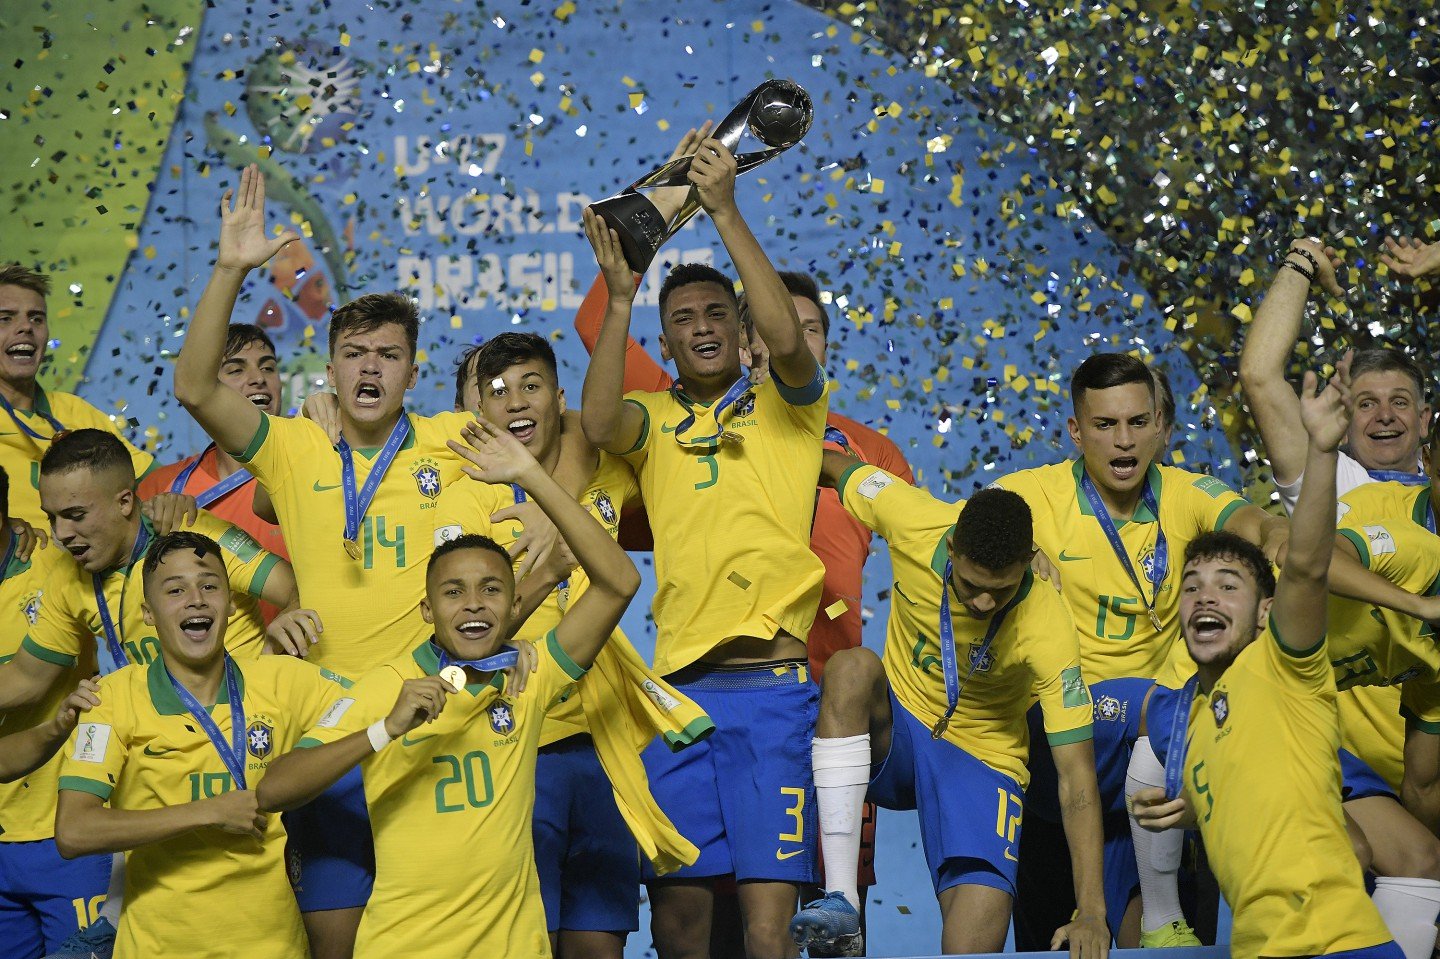 FIFA reconhece o Brasil como maior vencedor da Copa do Mundo Sub 17 2020 08 16 10:42:46